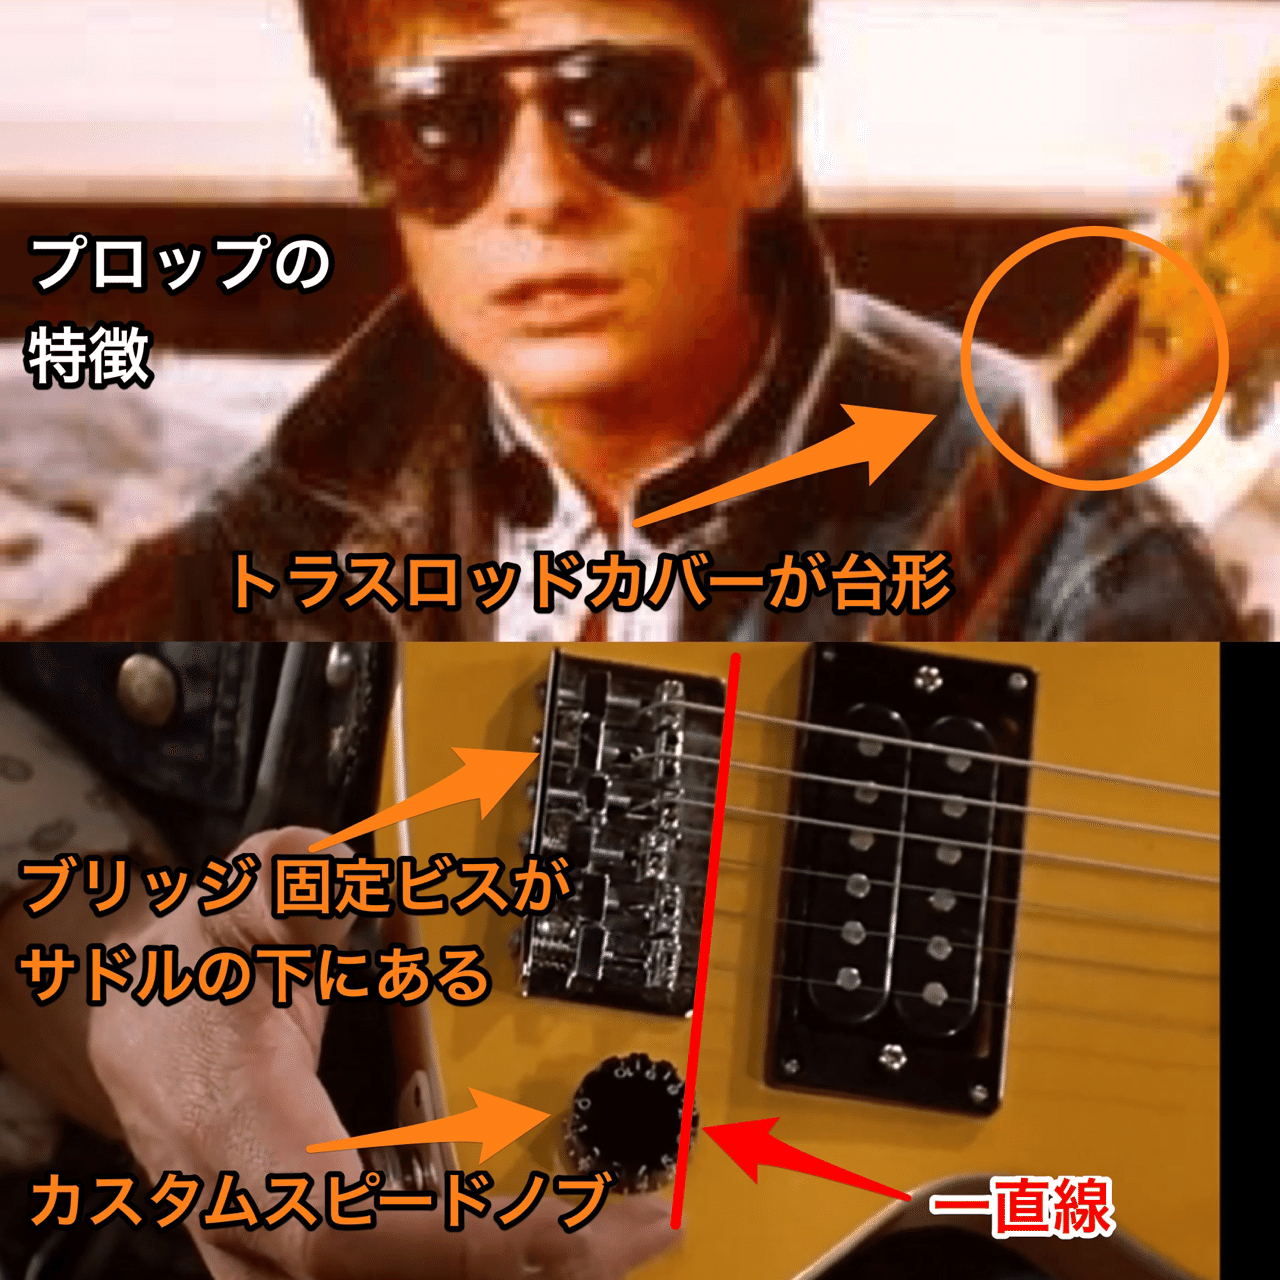 チキータギター - エレキギター